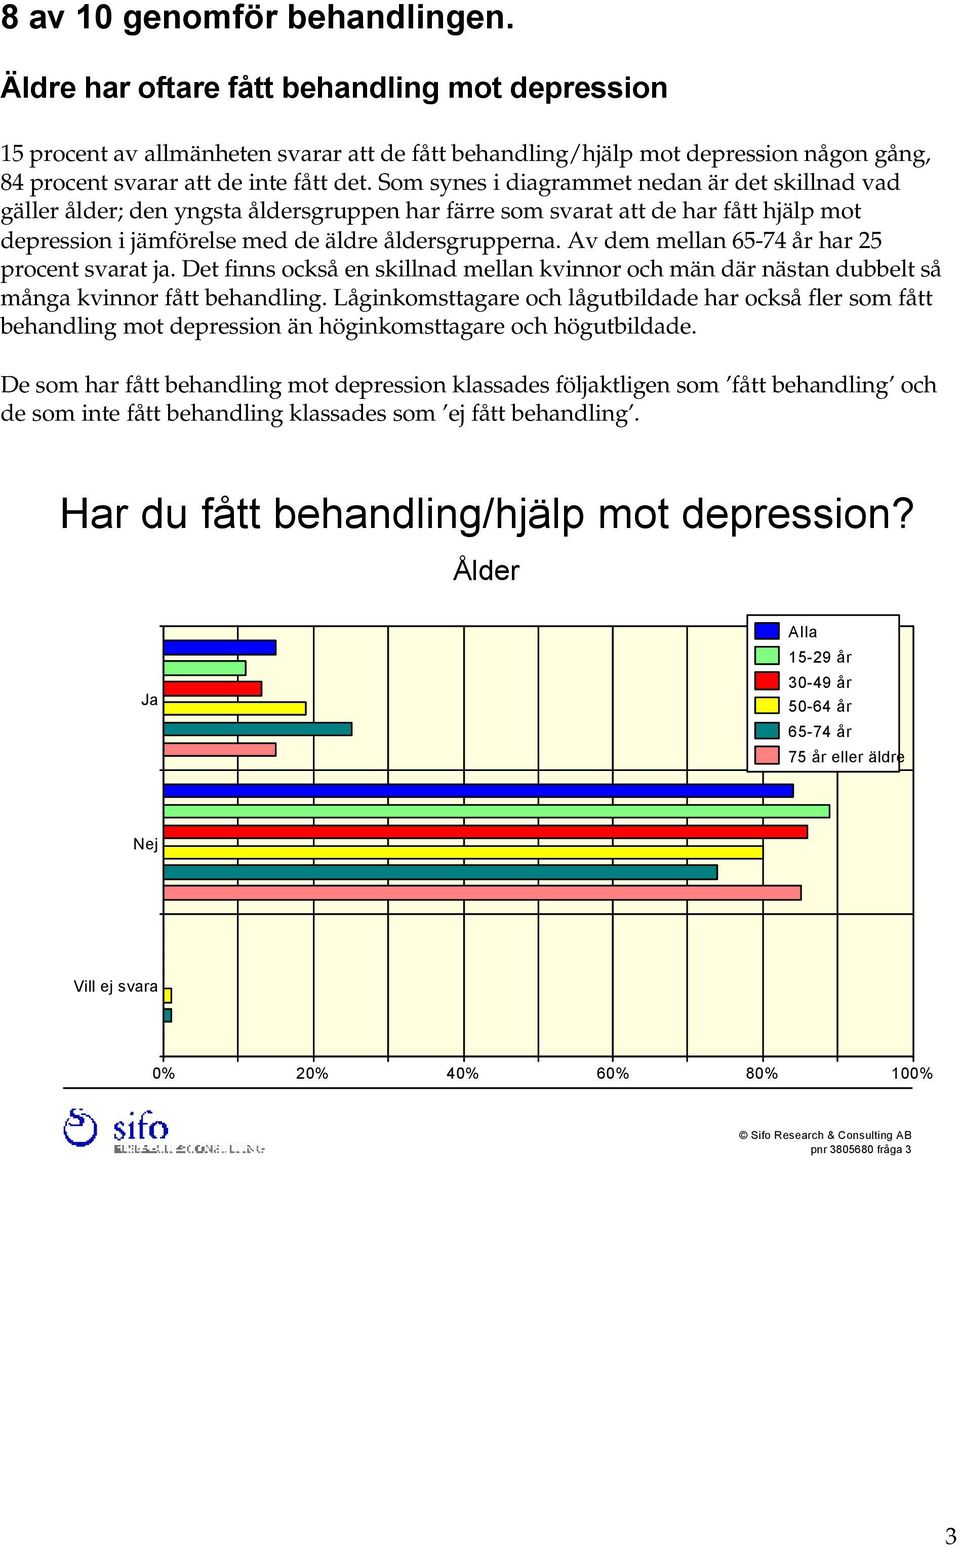 Som synes i diagrammet nedan är det skillnad vad gäller ålder; den yngsta åldersgruppen har färre som svarat att de har fått hjälp mot depression i jämförelse med de äldre åldersgrupperna.